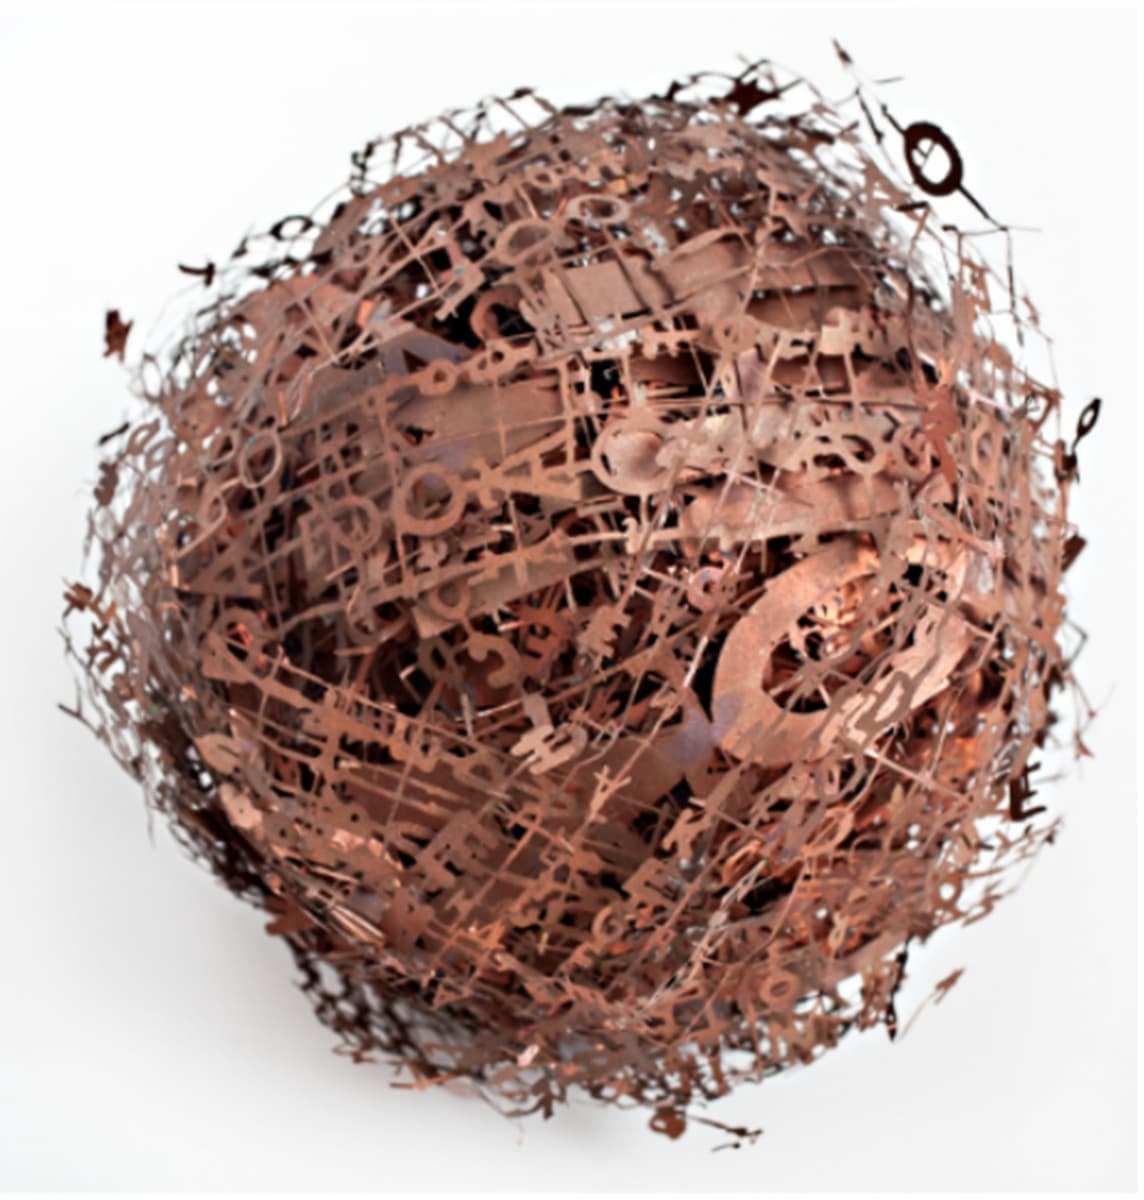 ヒラルサミヒラル–球形の本, 2022, 銅/腐食, 20 X 20 cm. 写真: ブルーノ・コエーリョ.